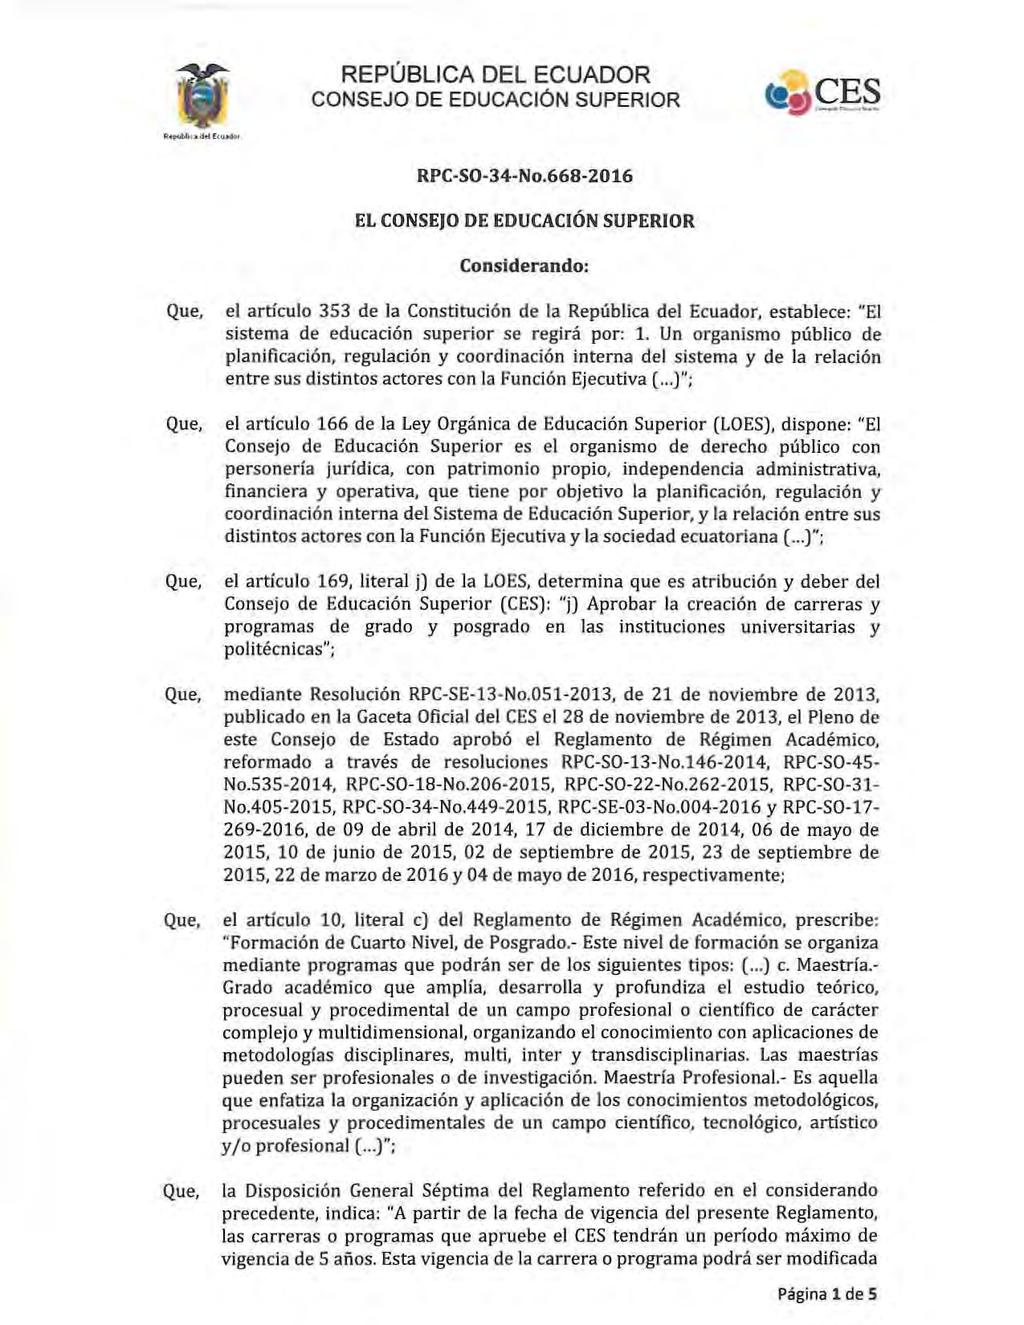 REPÚBLCA DEL ECUADOR CONSEJO DE EDUCACiÓN SUPEROR RPC-SO-34-No.